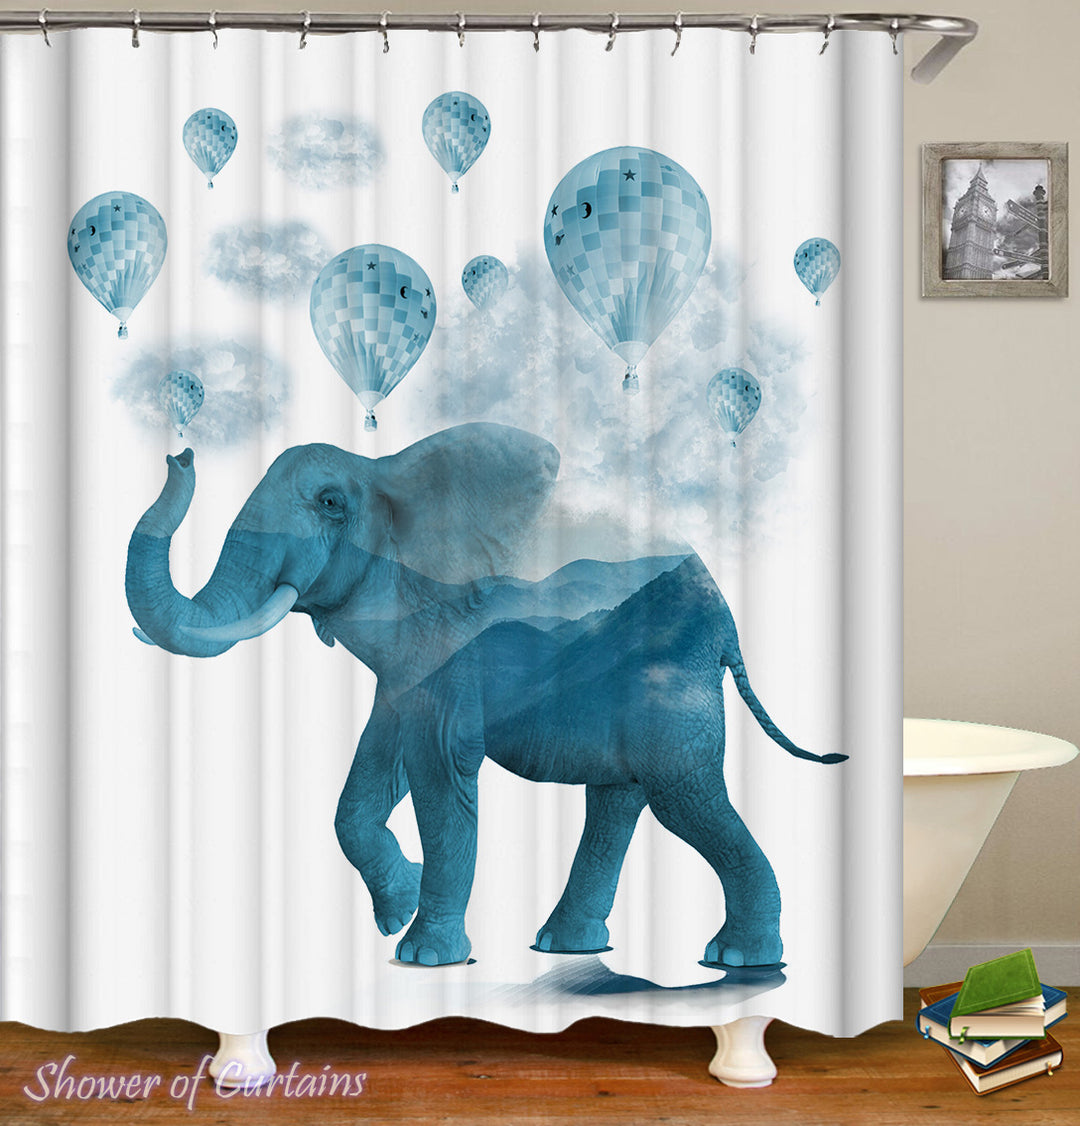 Elephant Bathroom Decor of Blue Hot-Air Balloons And Elephant Shower Curtain